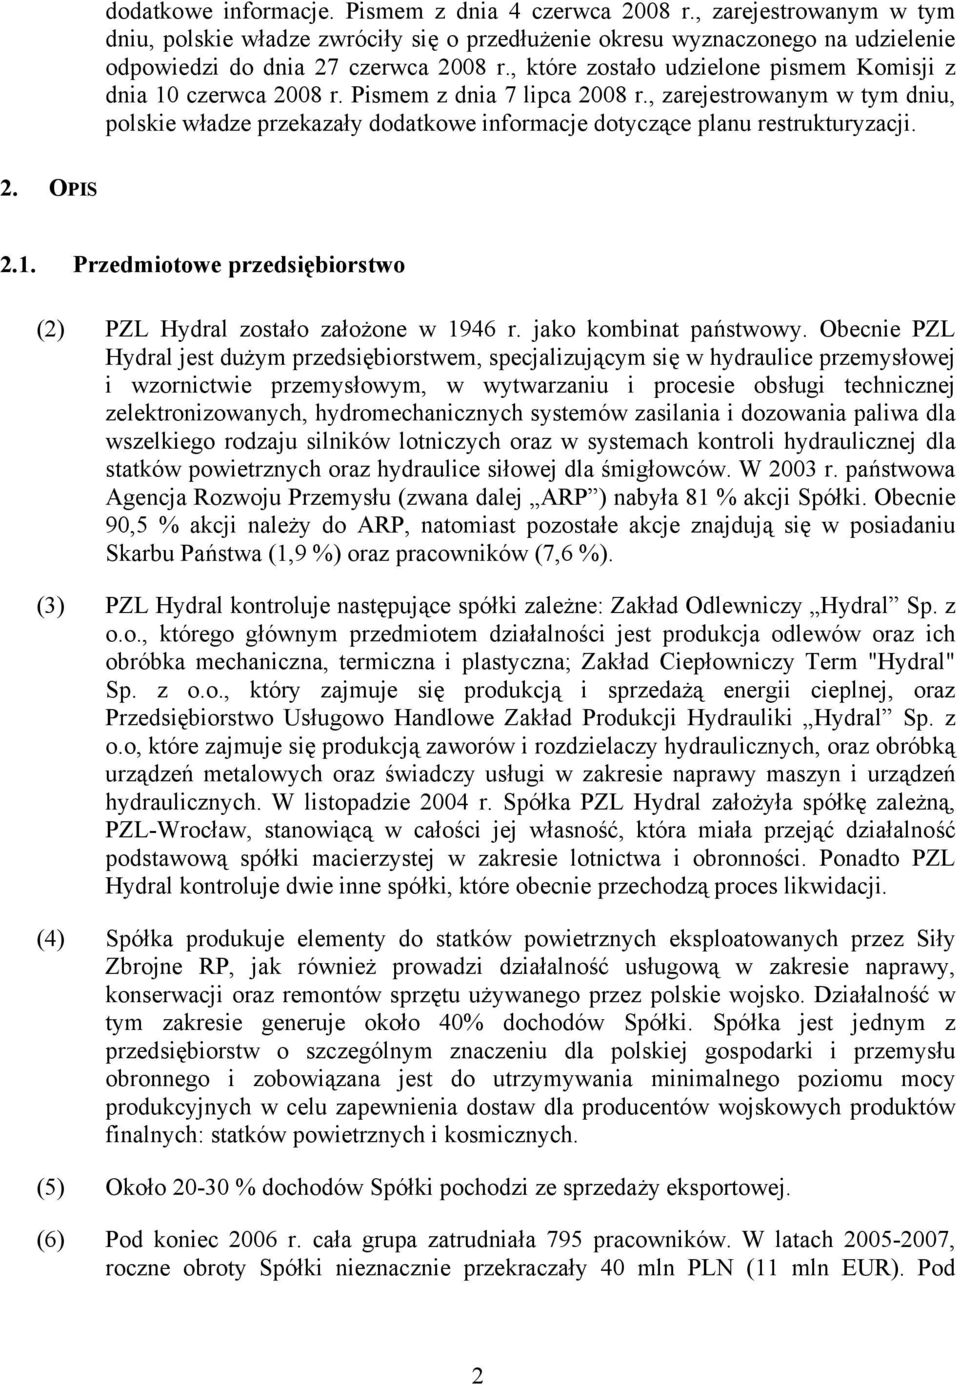 , zarejestrowanym w tym dniu, polskie władze przekazały dodatkowe informacje dotyczące planu restrukturyzacji. 2. OPIS 2.1. Przedmiotowe przedsiębiorstwo (2) PZL Hydral zostało założone w 1946 r.